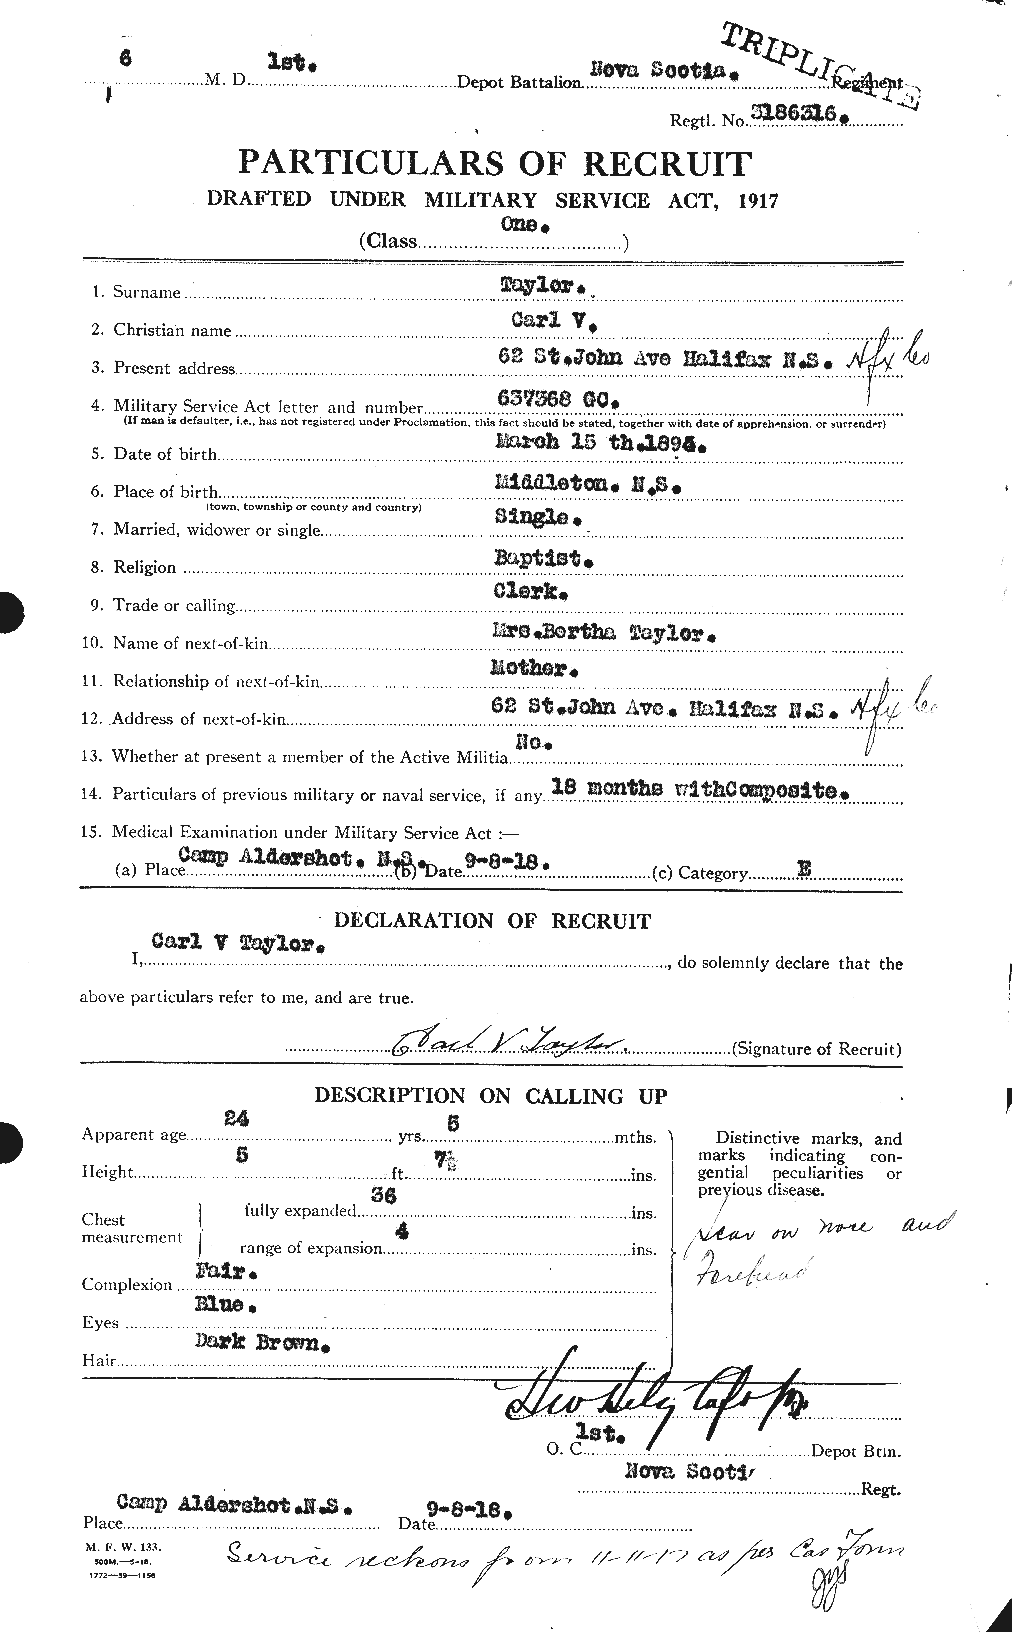 Dossiers du Personnel de la Première Guerre mondiale - CEC 626785a